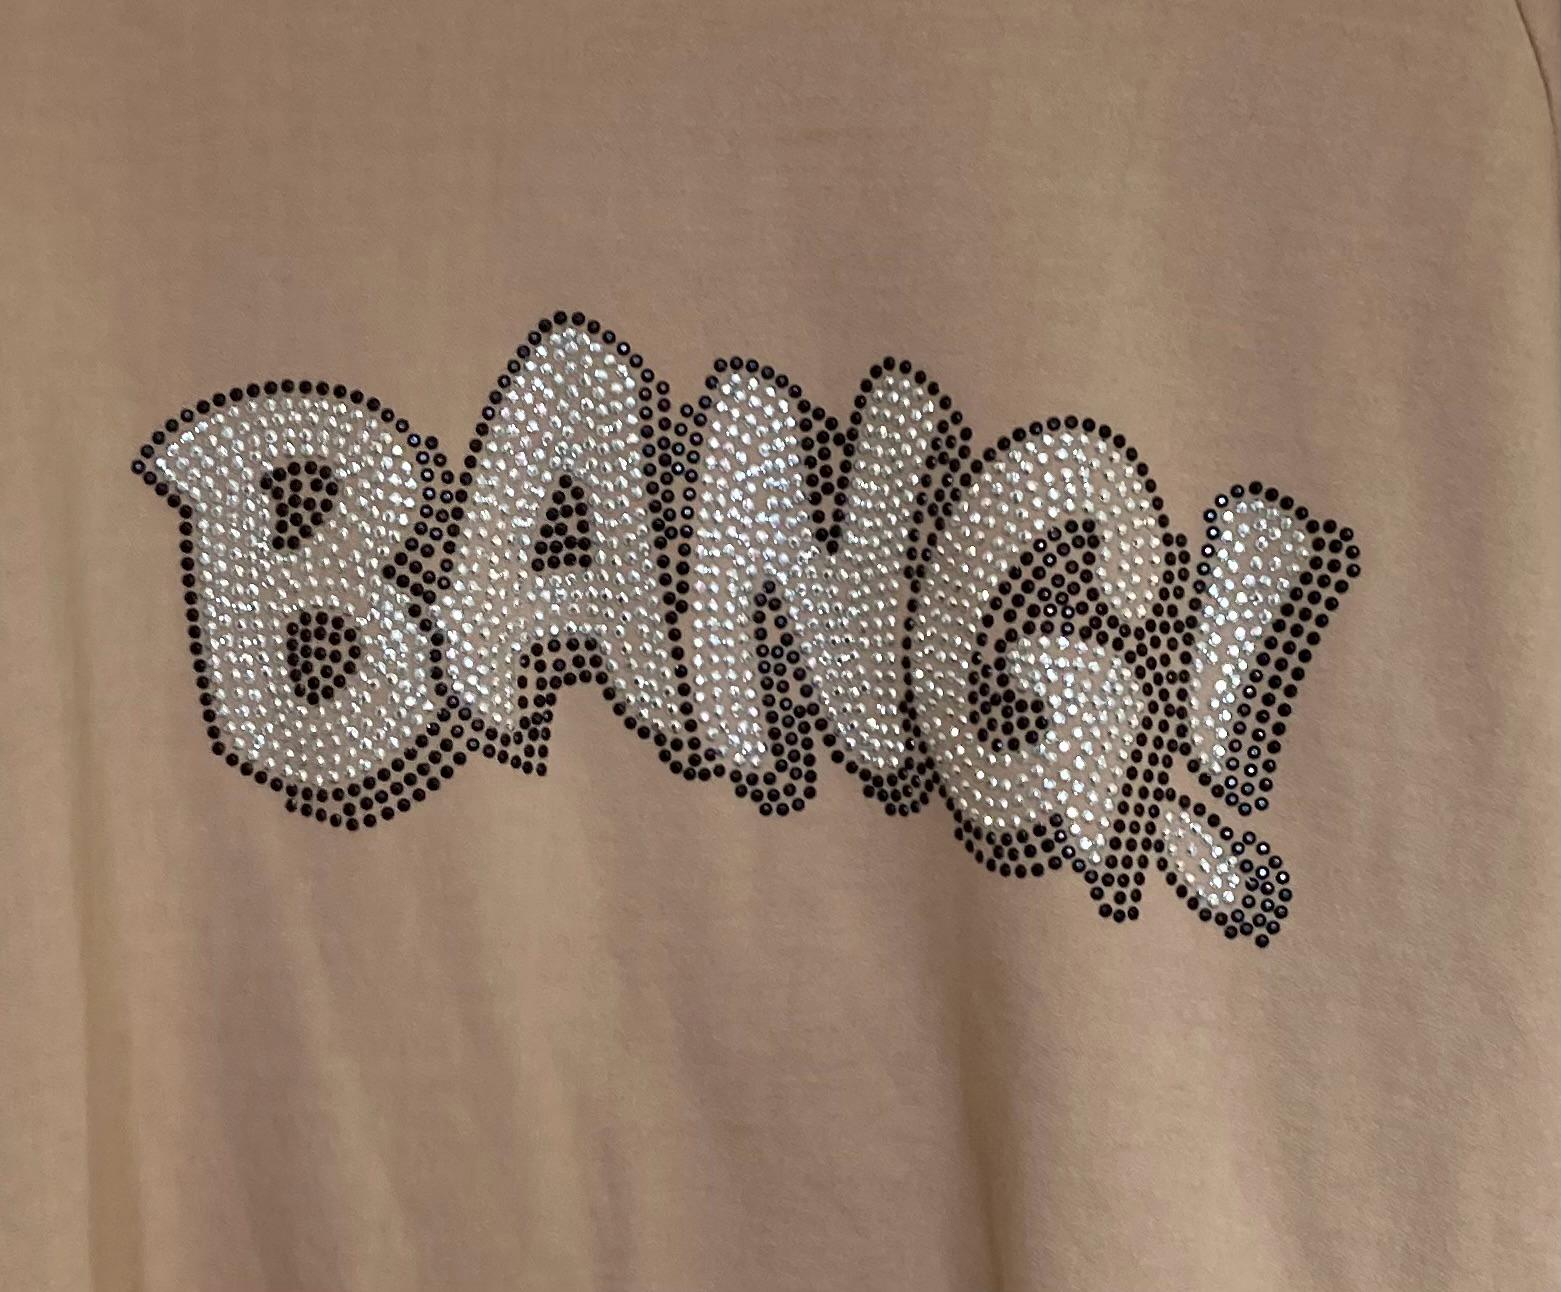 Funky Staff BANG sweatshirt - Maya Maya Ltd